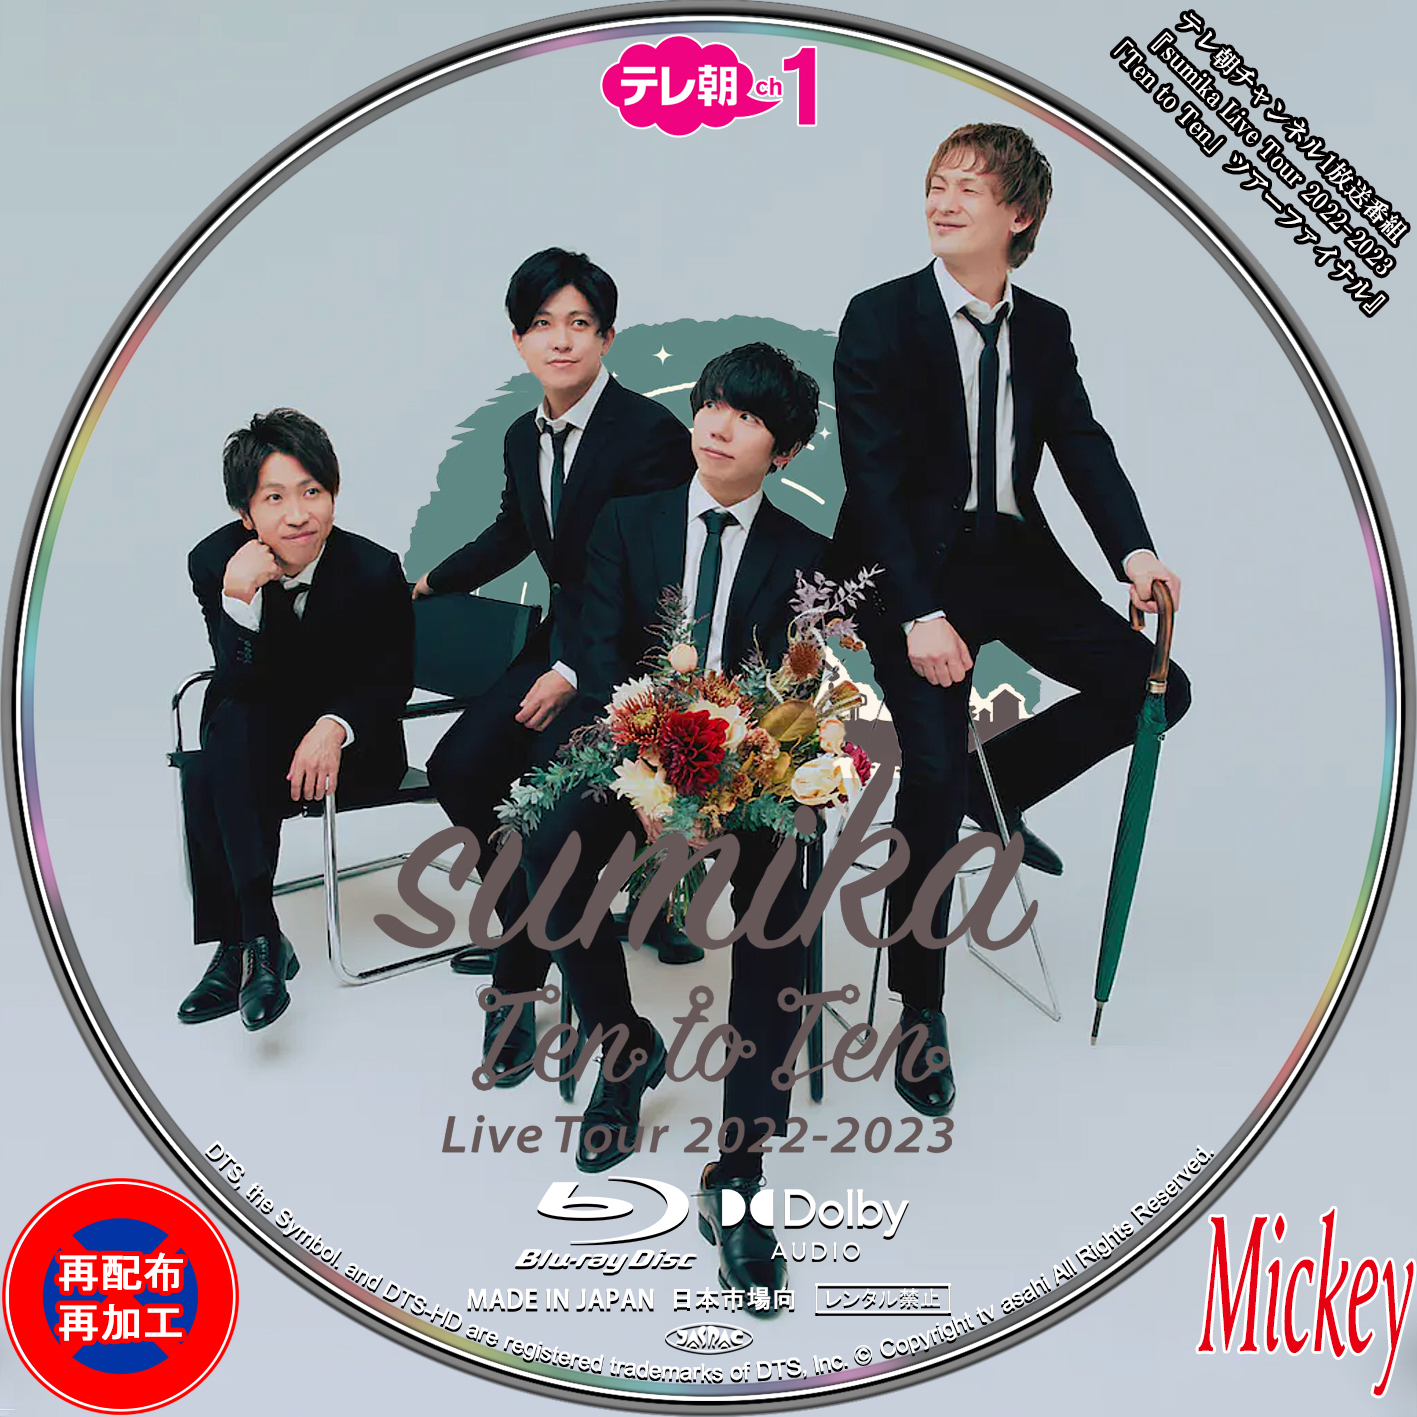 最新入荷 【即購入OK】sumika/Live Tour 2018 DVD ミュージック 